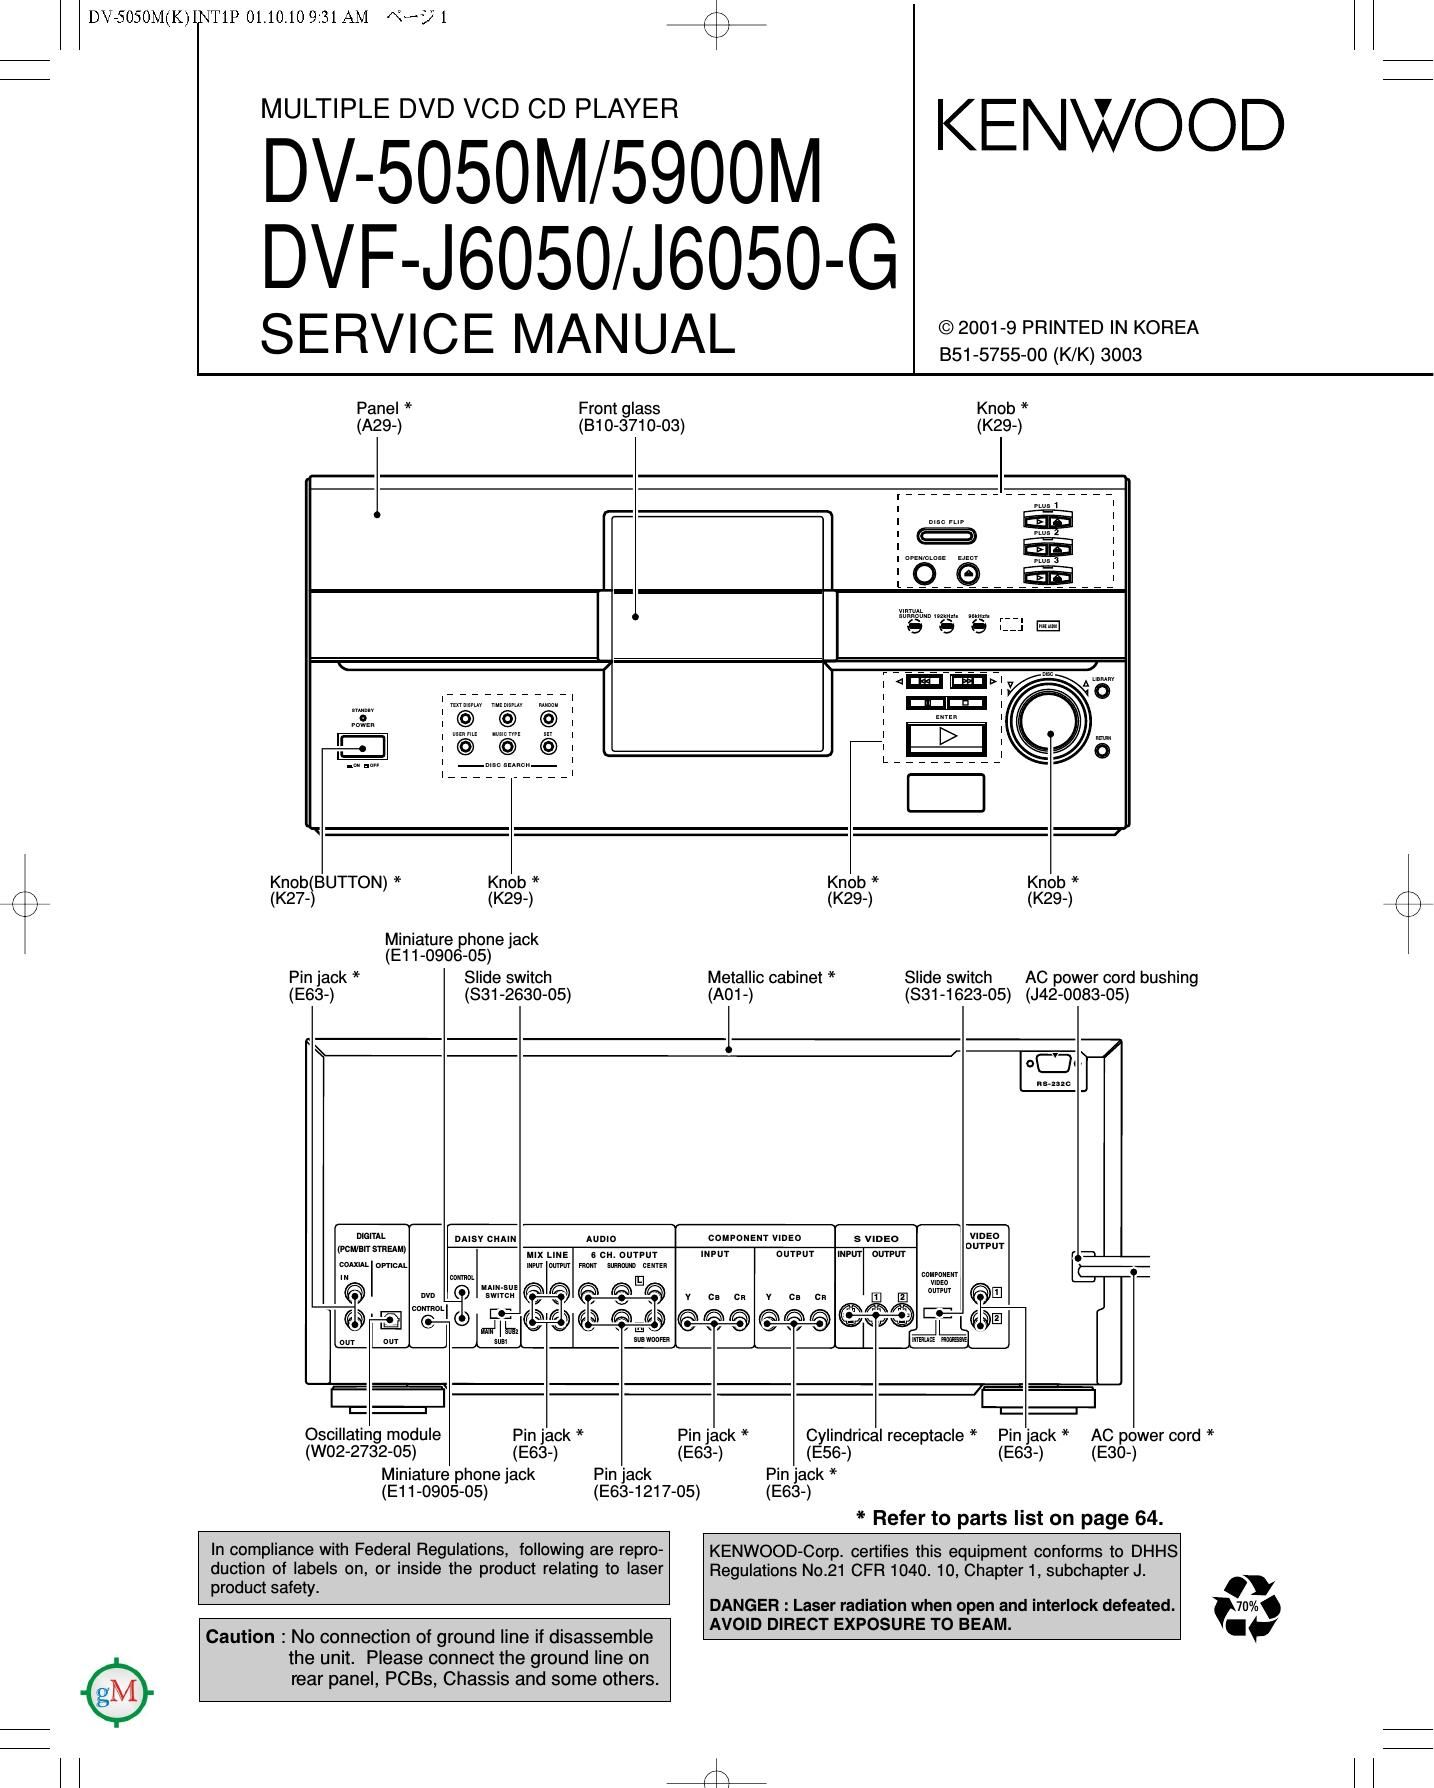 Kenwood DV 5050 M Service Manual